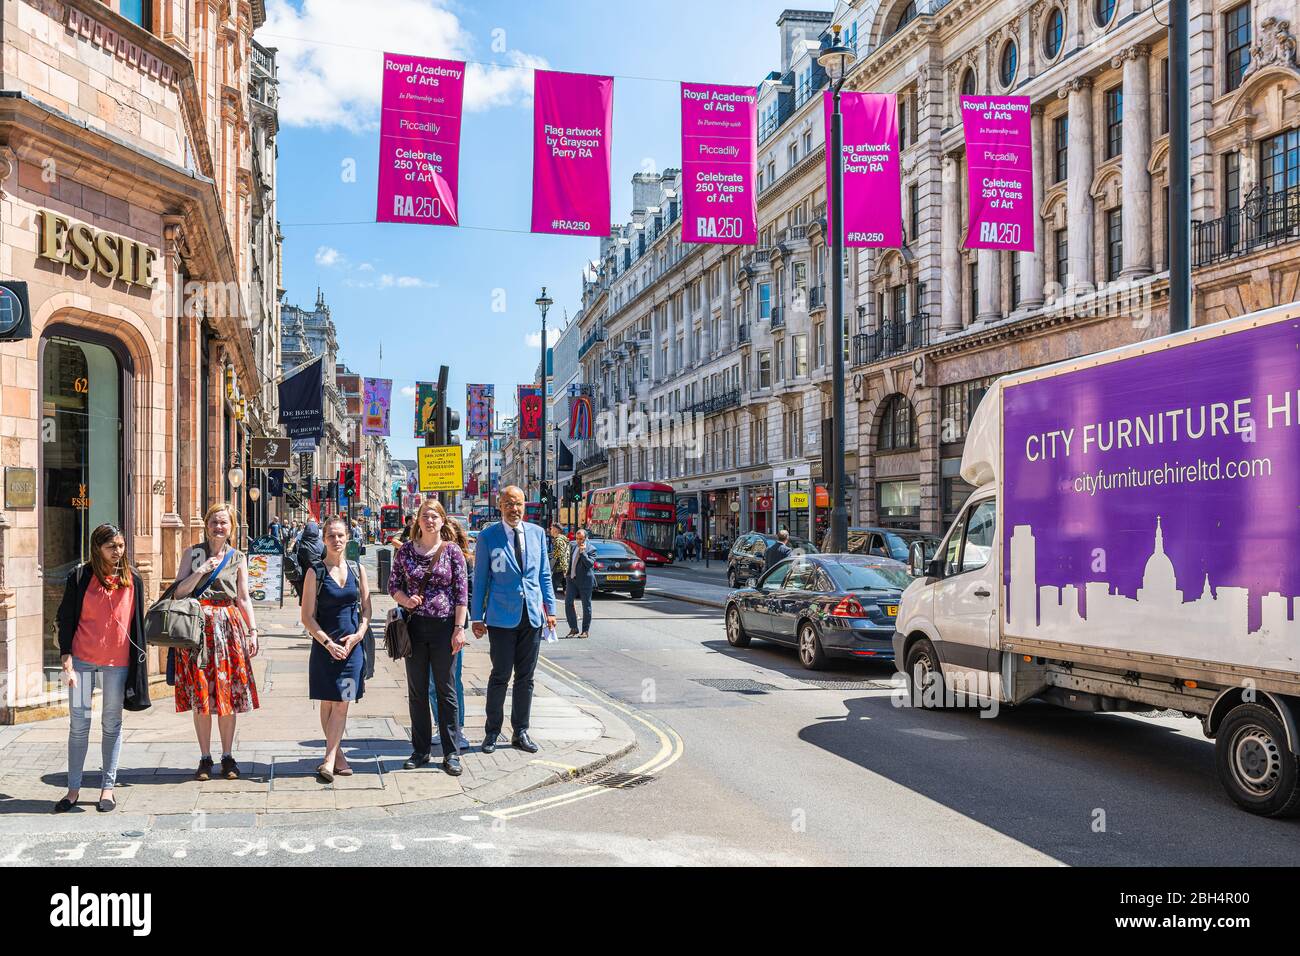 Londra, UK - 22 giugno 2018: Strada del circo Piccadilly con l'Accademia reale delle arti mostra striscioni e architettura storica nei giorni di sole e la gente Foto Stock